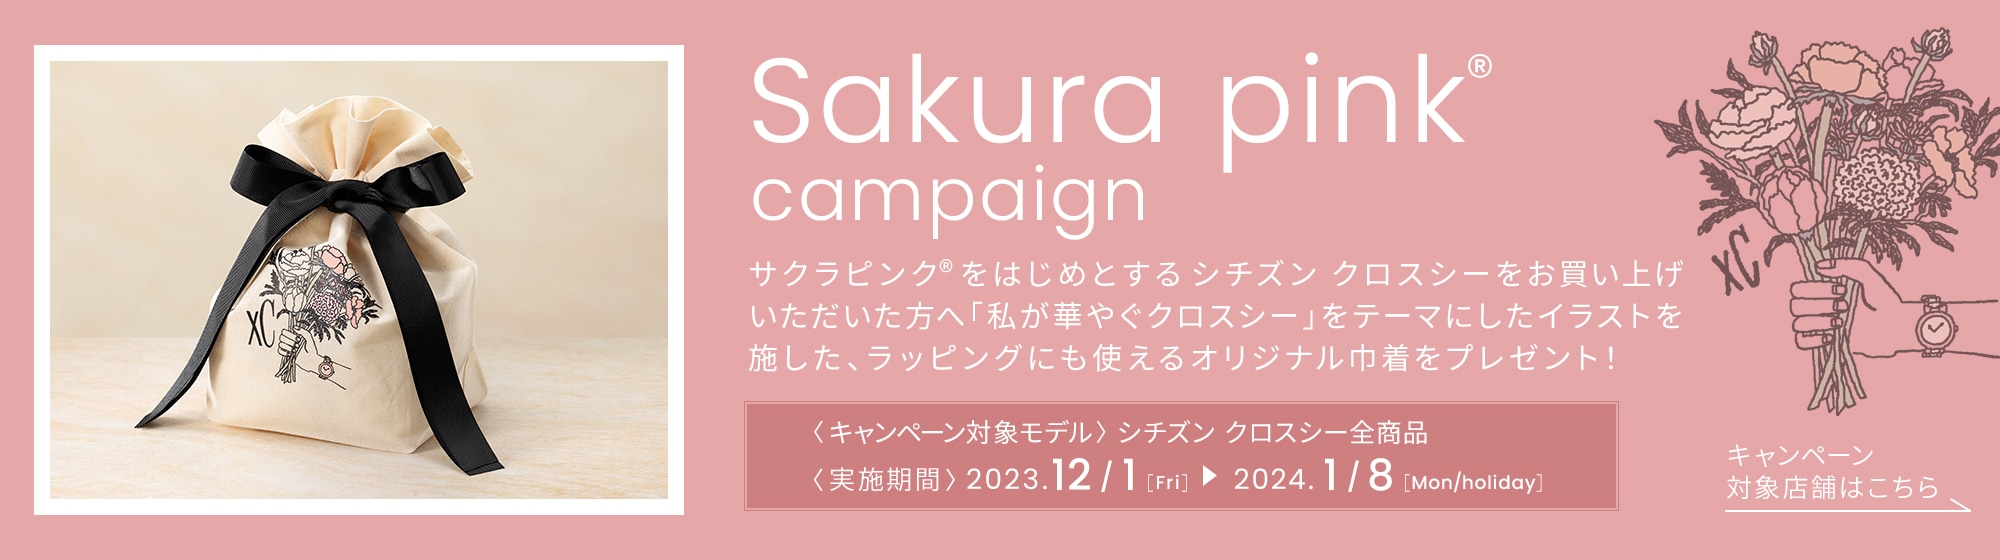 Sakura pink® campaign サクラピンク®をはじめとするシチズンクロスシーをお買い上げいただいた方へ「私が華やぐクロスシー」をテーマにしたイラストを施した、ラッピングにも使えるオリジナル巾着をプレゼント！